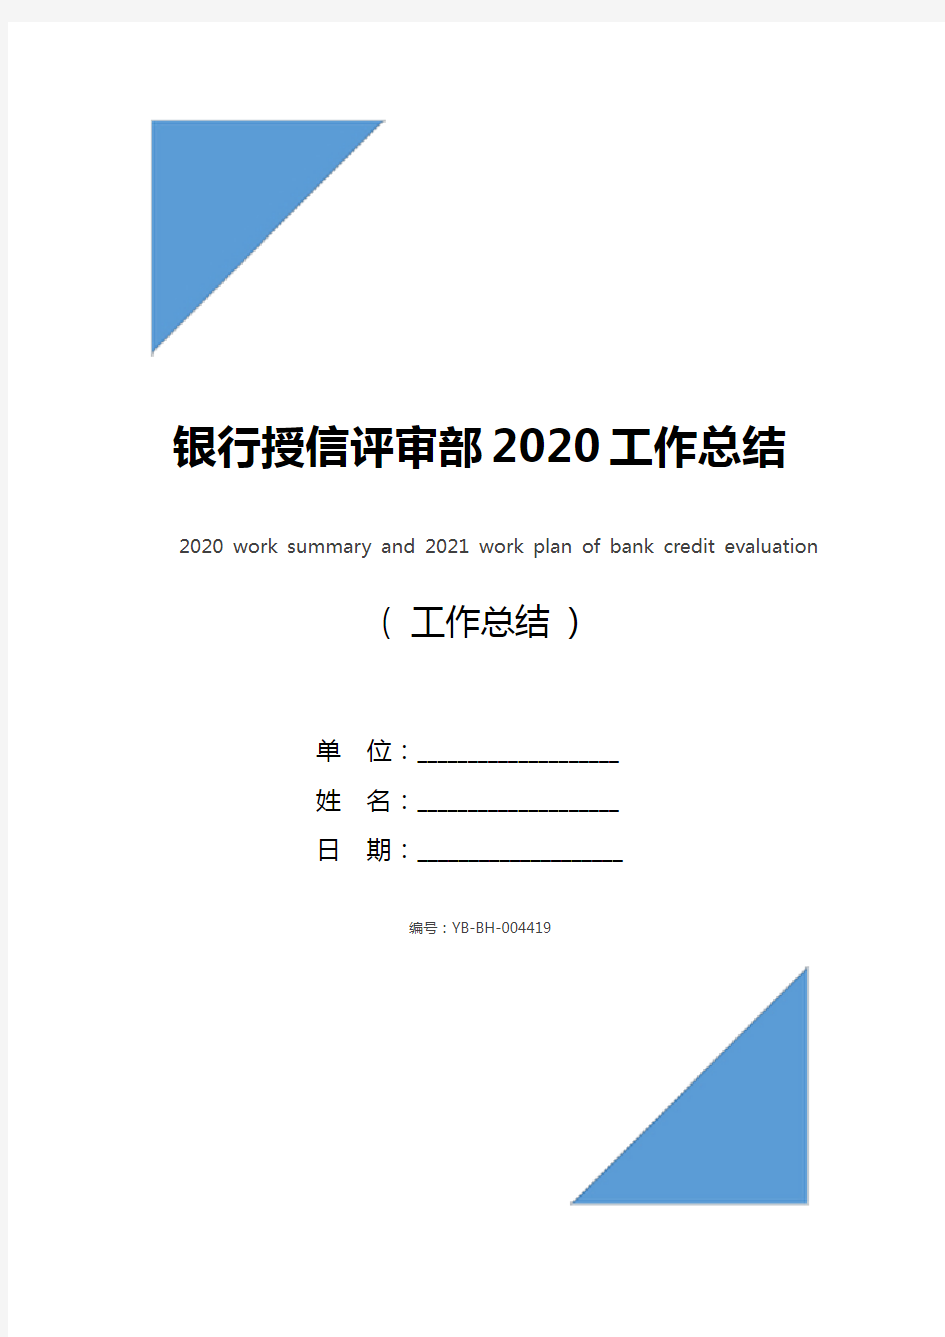 银行授信评审部2020工作总结及2021工作计划